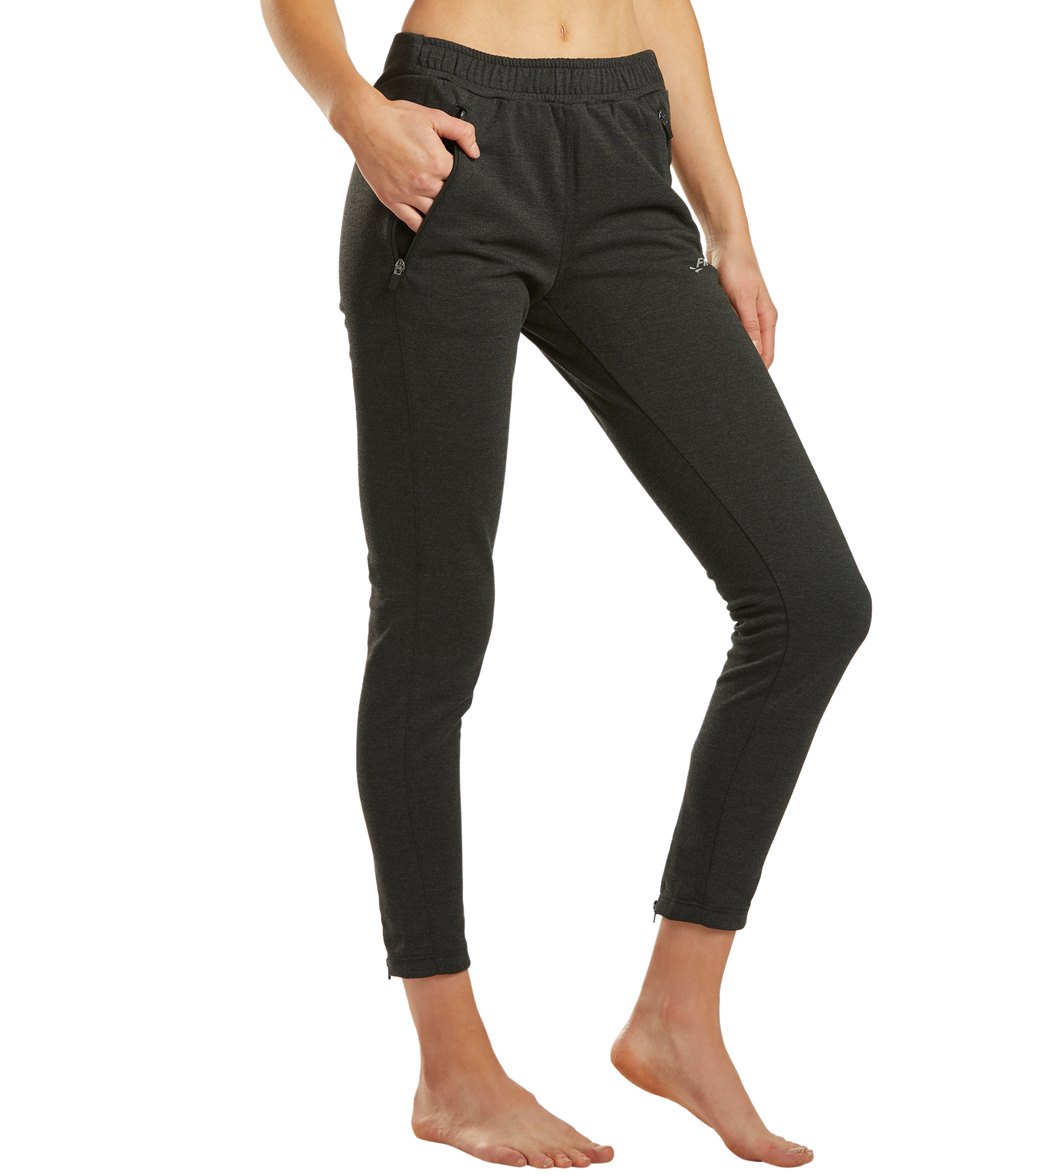 Finis Women's Tech Pants - Black Large Size Large Cotton/Polyester - Swimoutlet.com